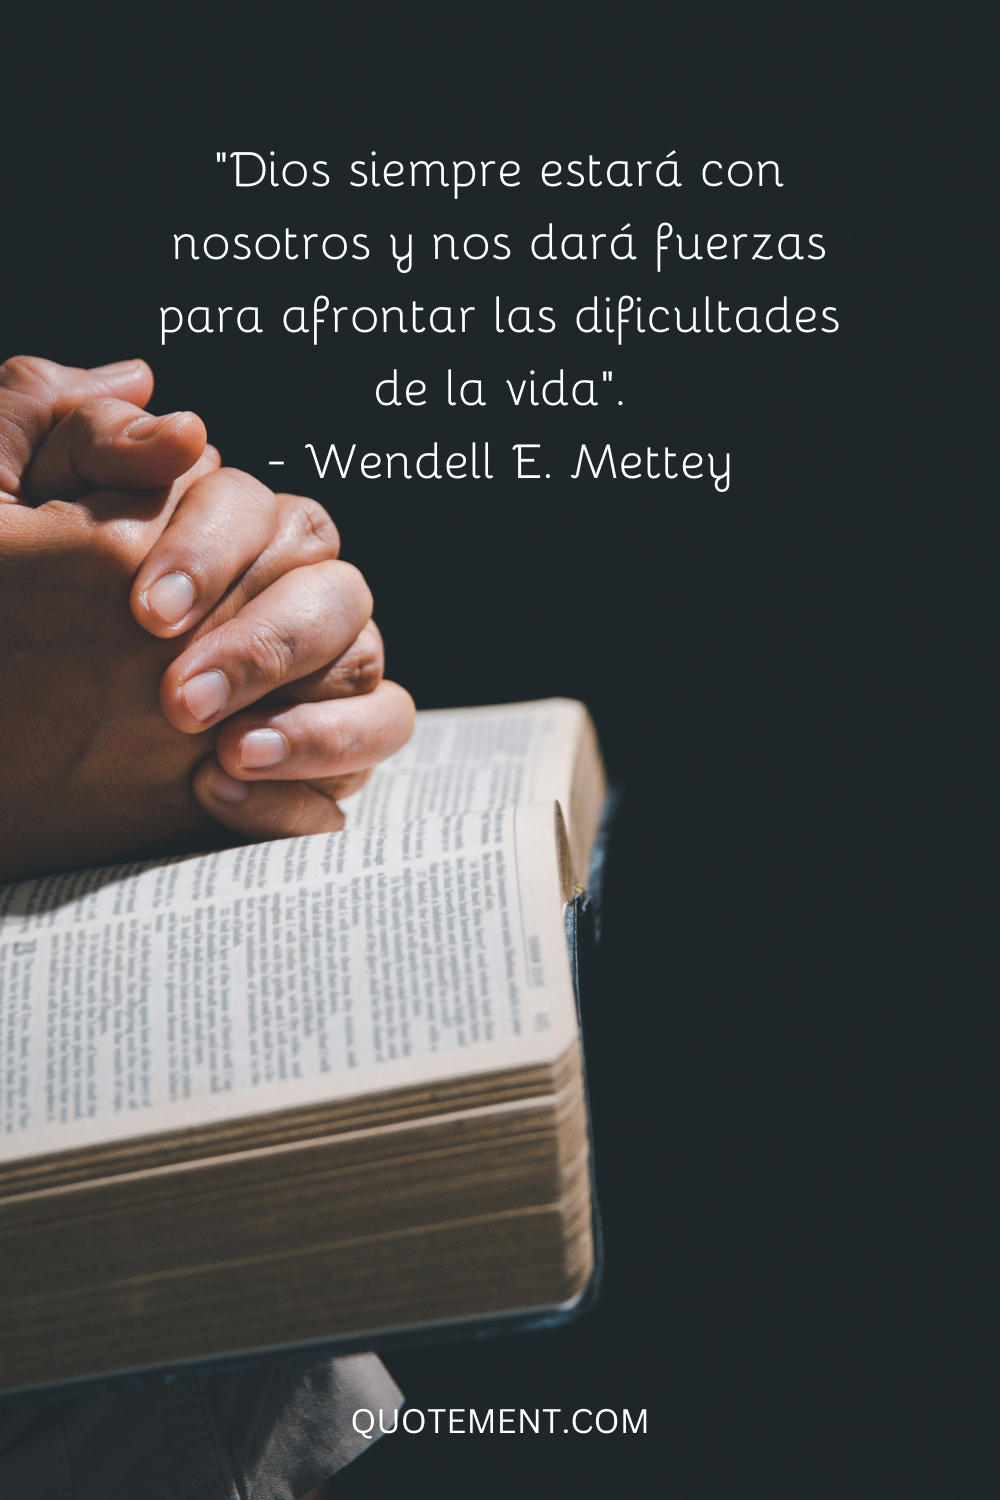 "Dios siempre estará con nosotros y nos dará la fuerza para afrontar las dificultades de la vida". - Wendell E. Mettey